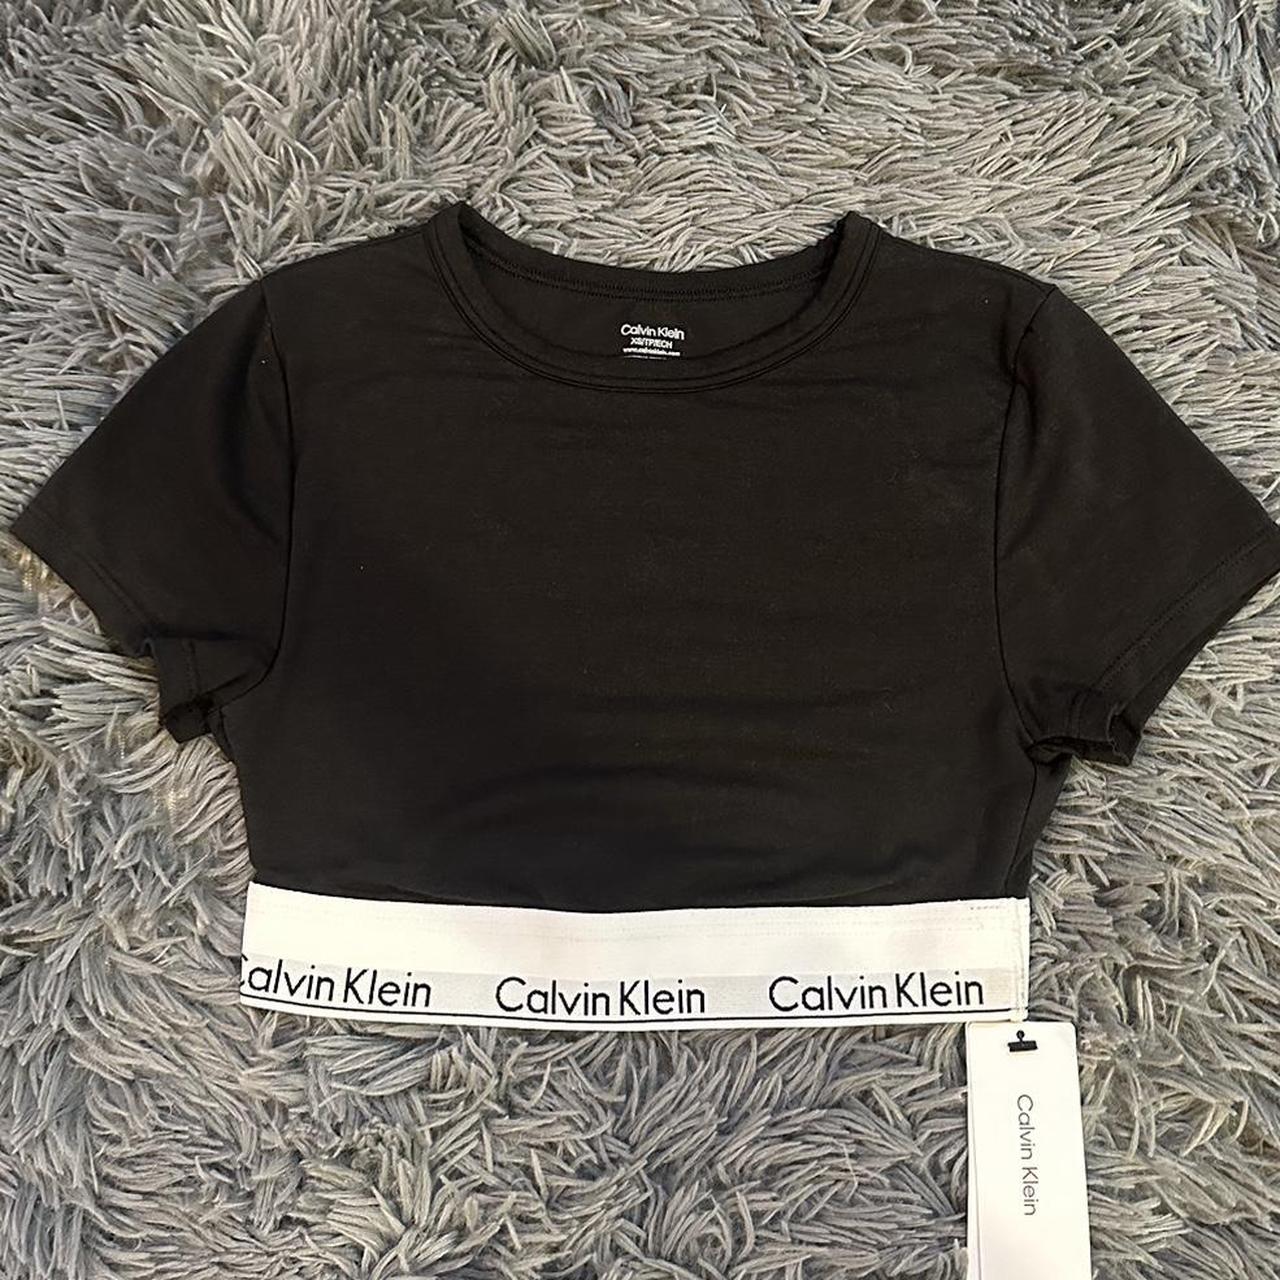 Calvin Klein t-shirt bralette ❥ brand new with - Depop